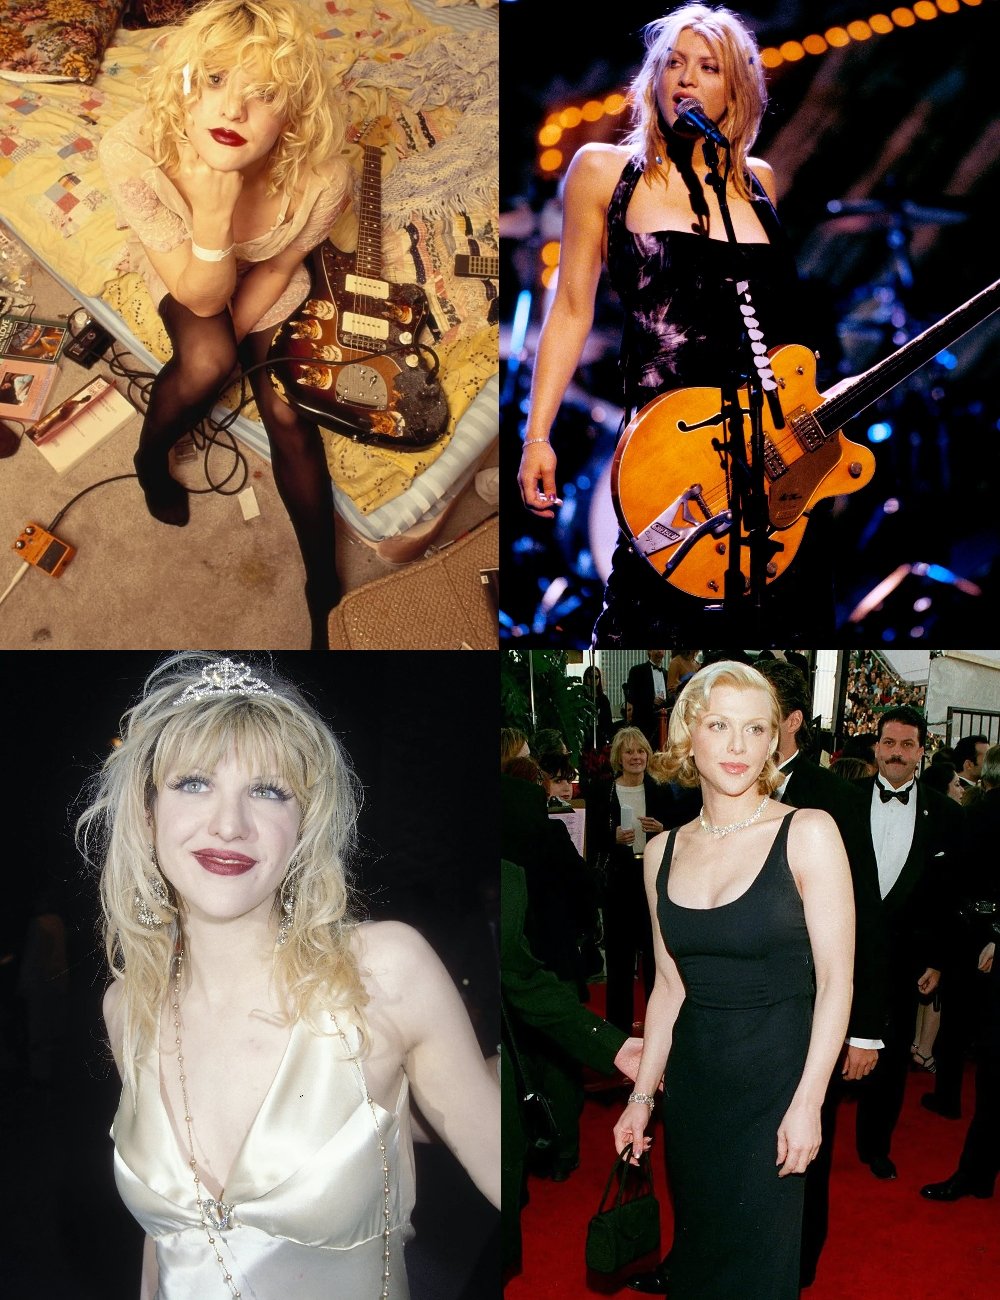 Courtney Love - mulheres do rock - mulheres do rock - mulheres do rock - mulheres do rock - https://stealthelook.com.br